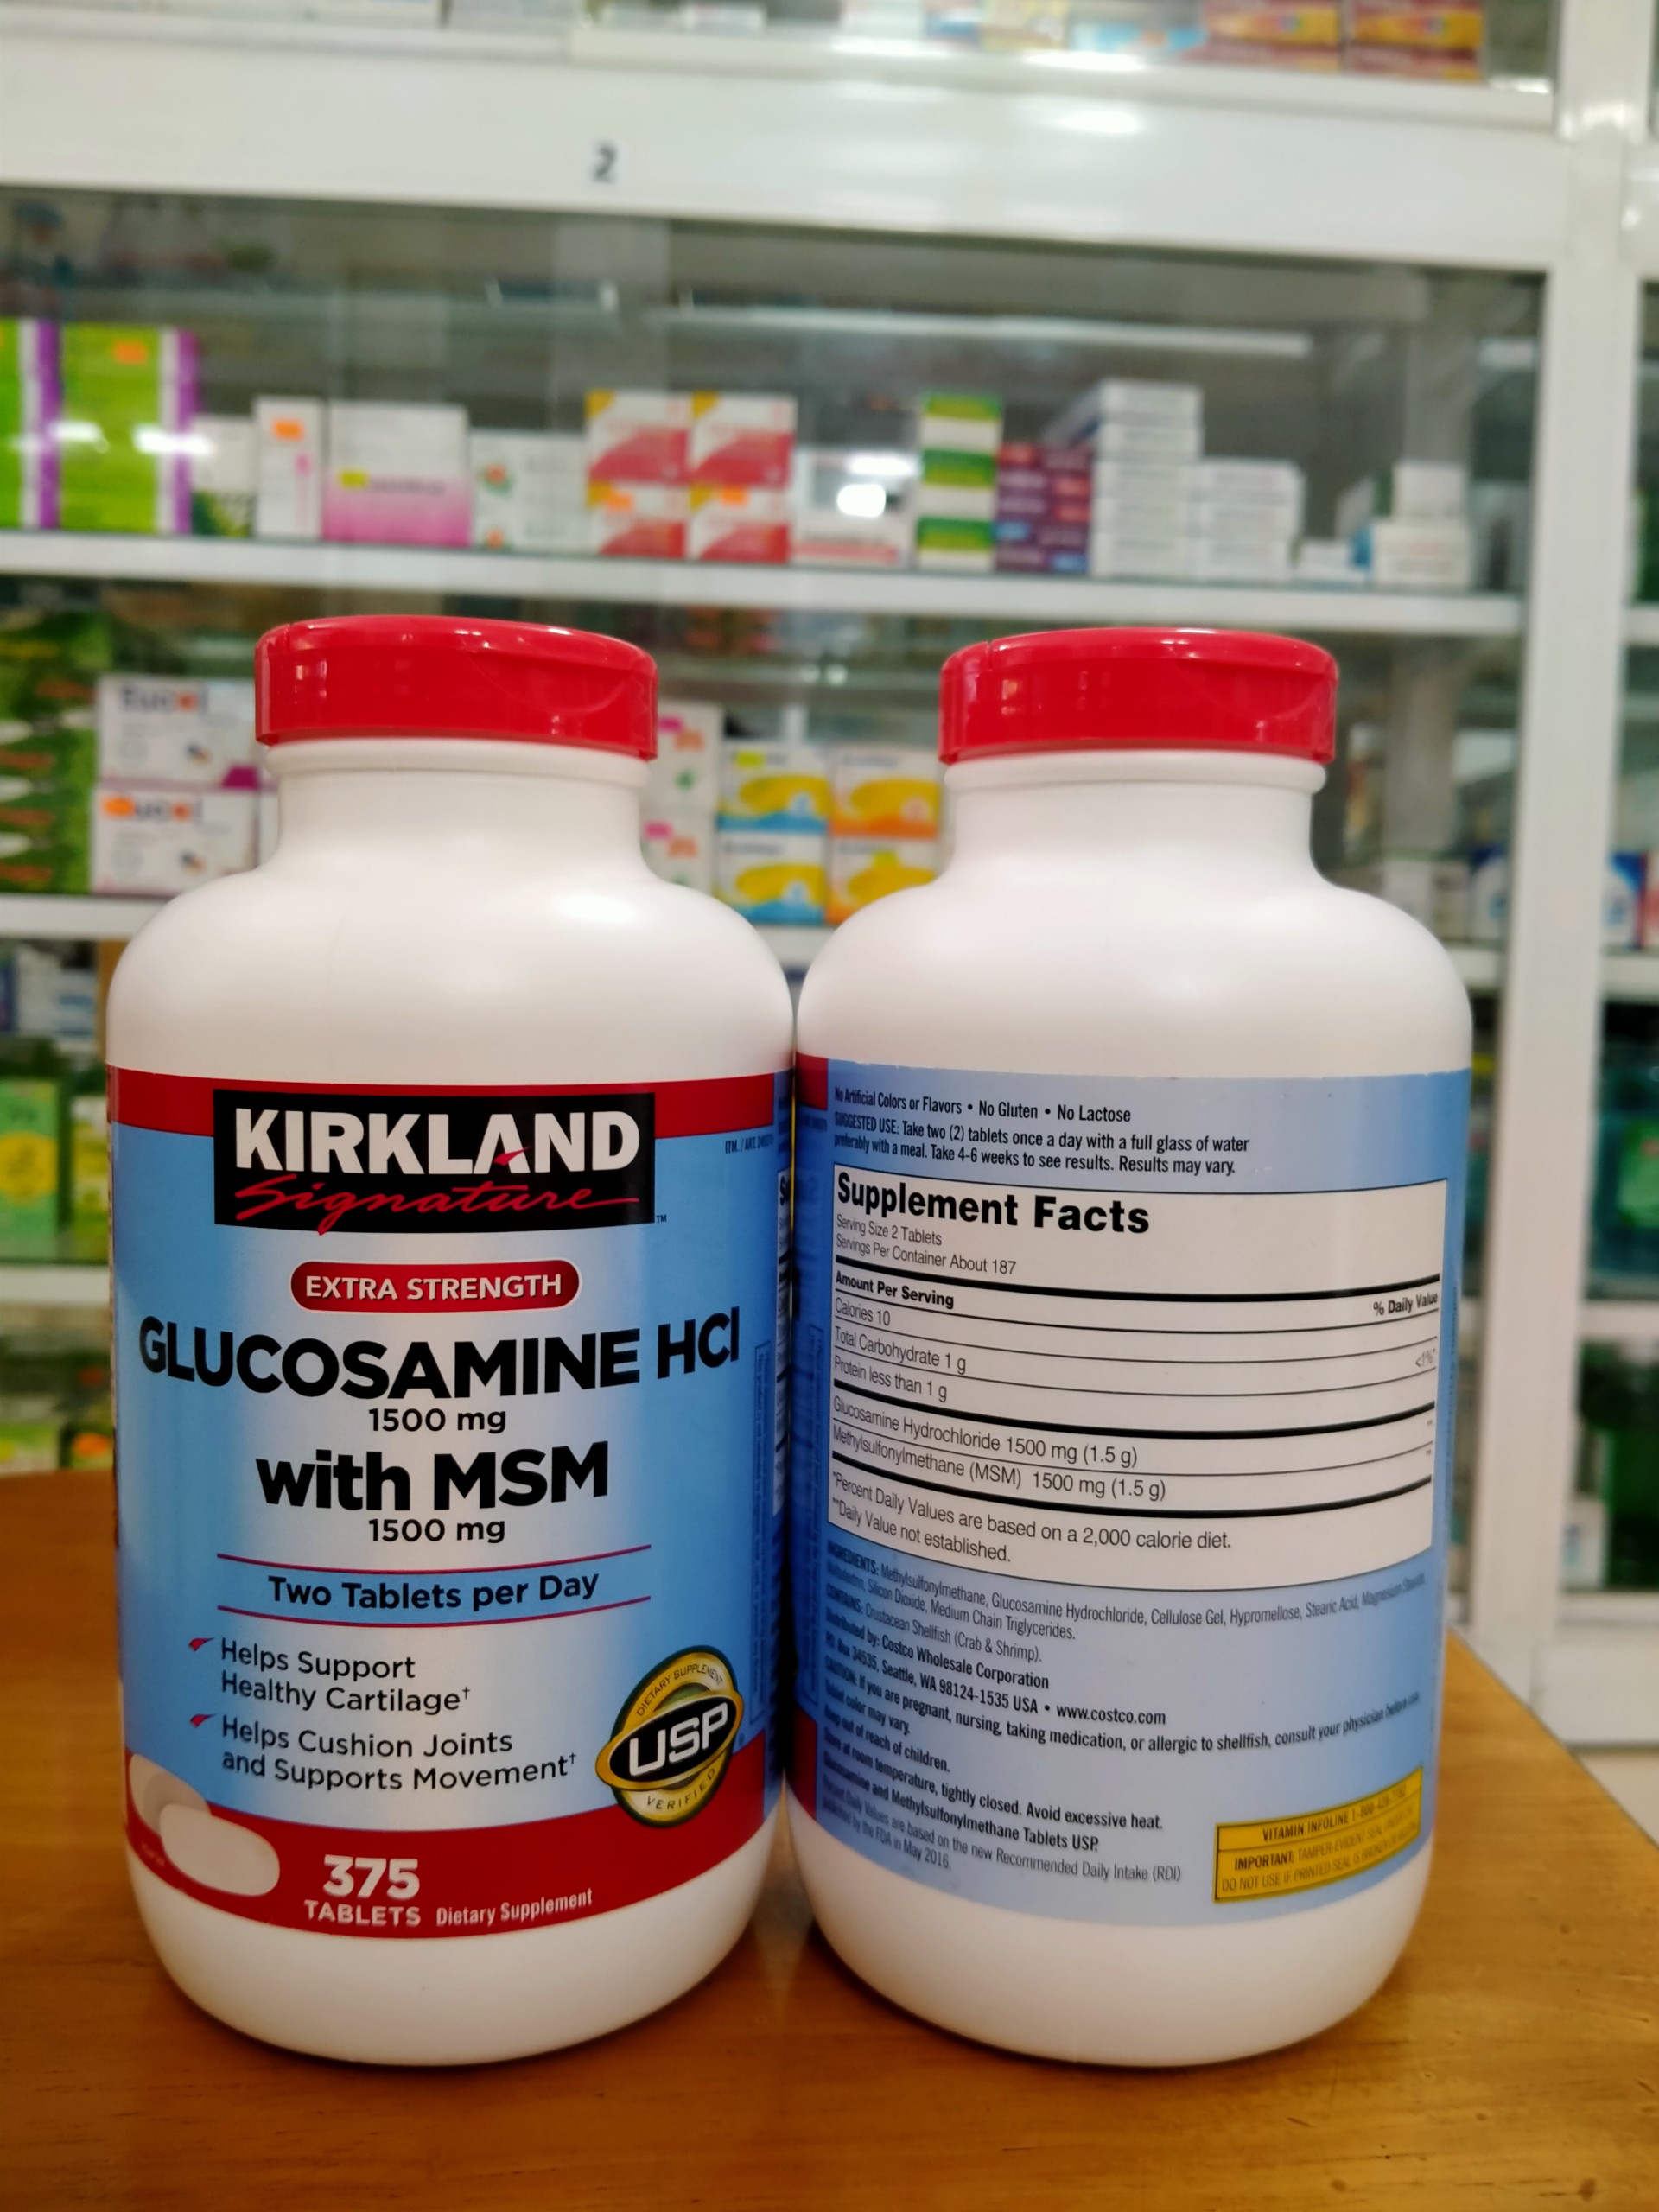 Viên uống bổ xương khớp Kirkland Glucosamine HCL With MSM 1500mg Mỹ - Hộp 375 Viên - Giúp Xương Chắc Khoẻ, Ngăn Ngừa Bệnh Xương Khớp TuTu Care